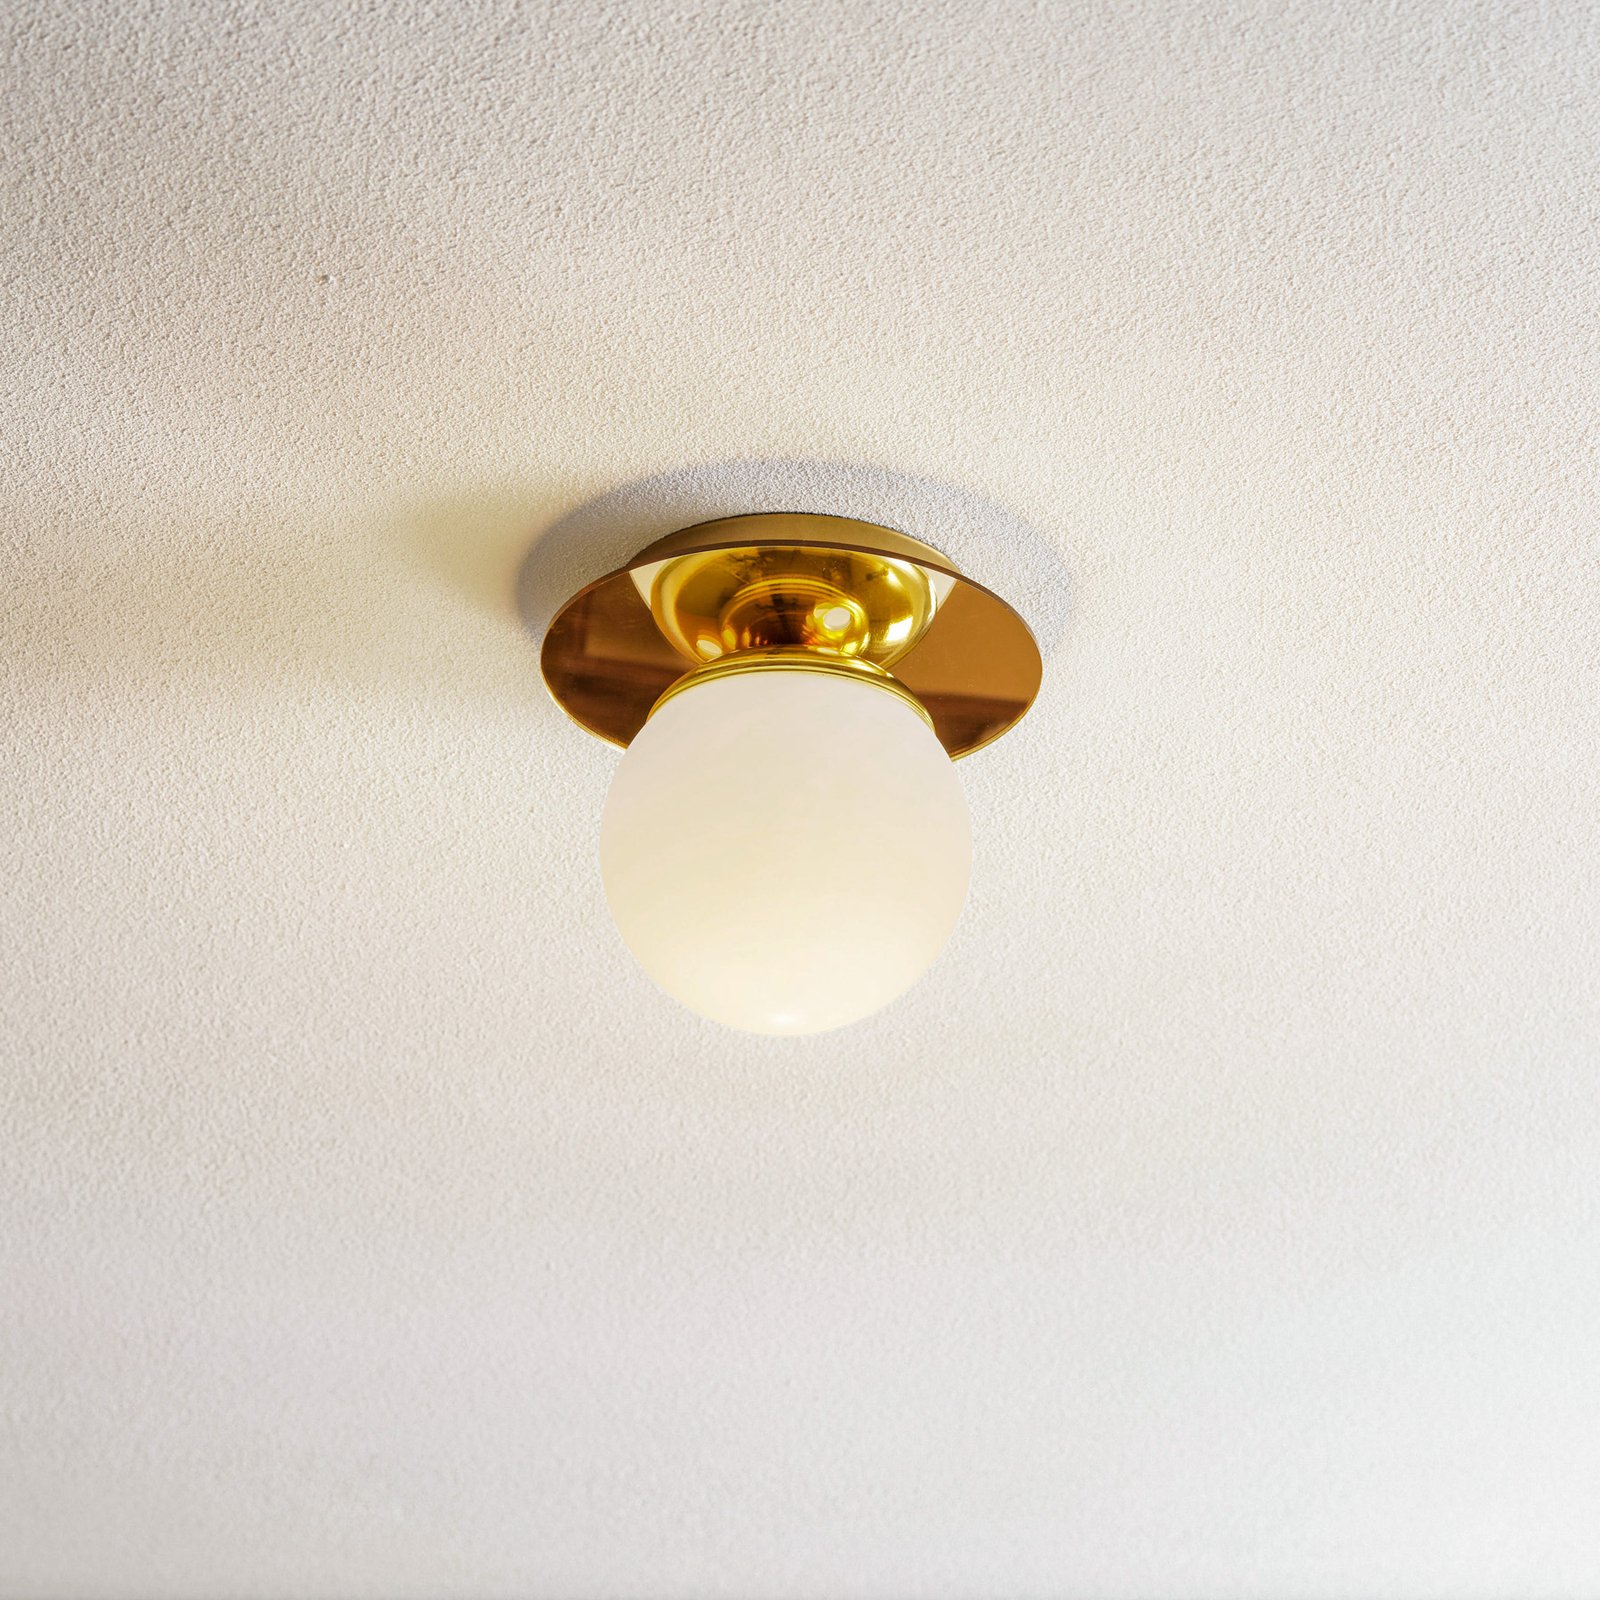 Plato ceiling light, one-bulb, Ø 19 cm